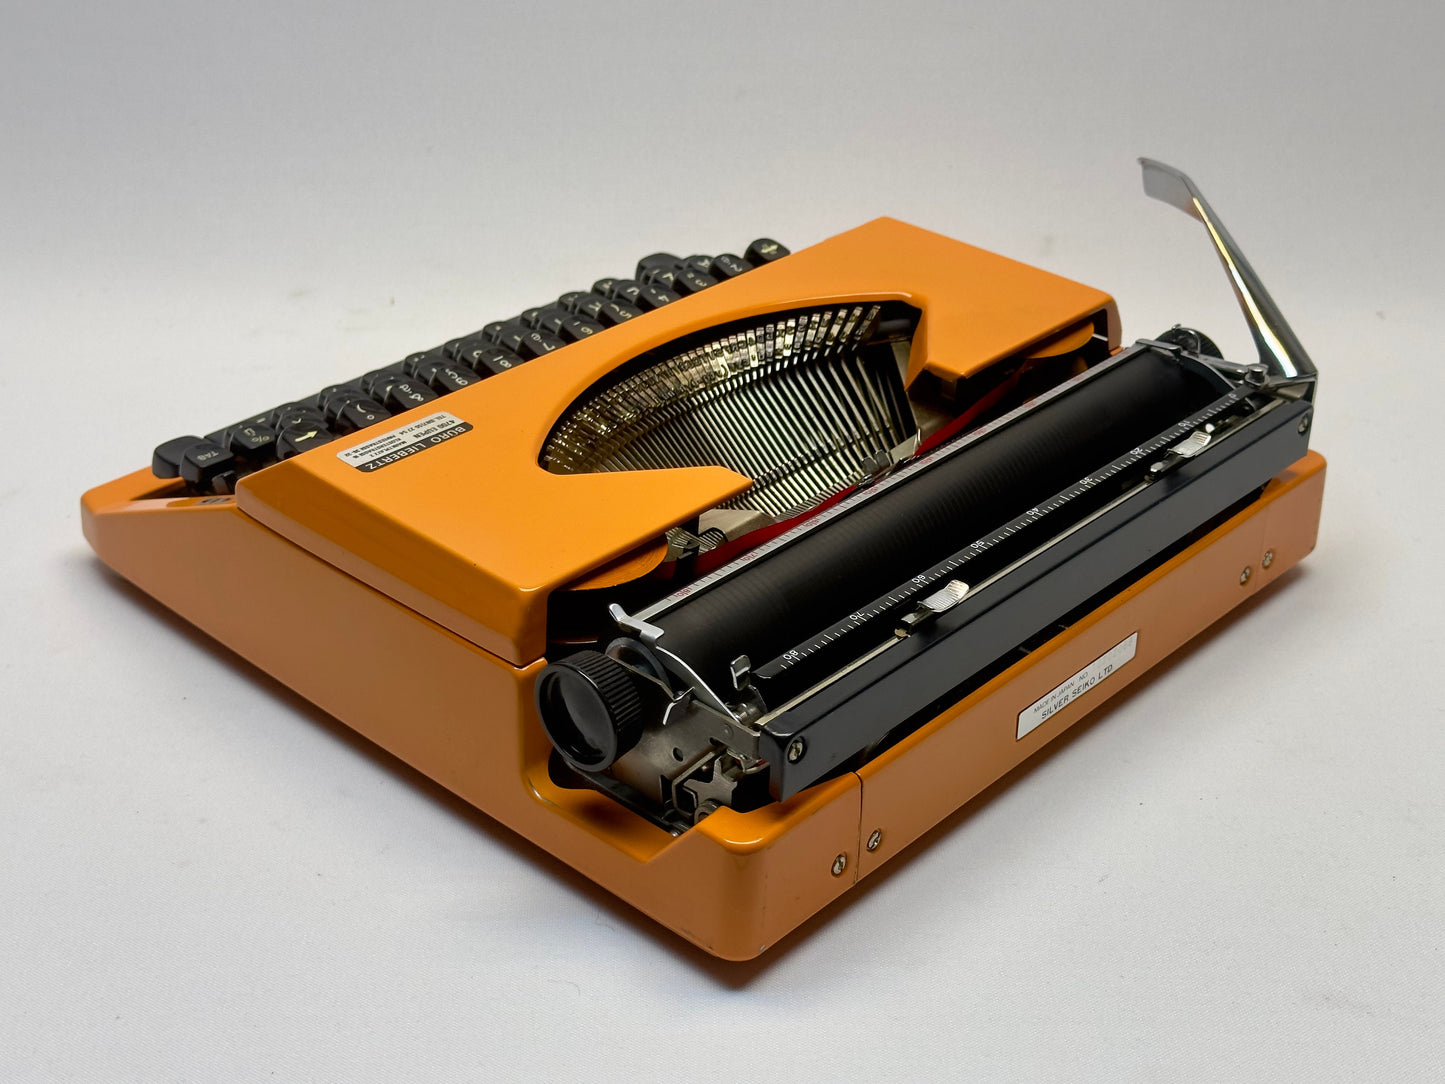 Nice Gift!- Silver Reed Typewriter in Vibrant Orange with Black AZERTY Keyboard, Matching Bag, and Orange Typewriter Ribbon Cover